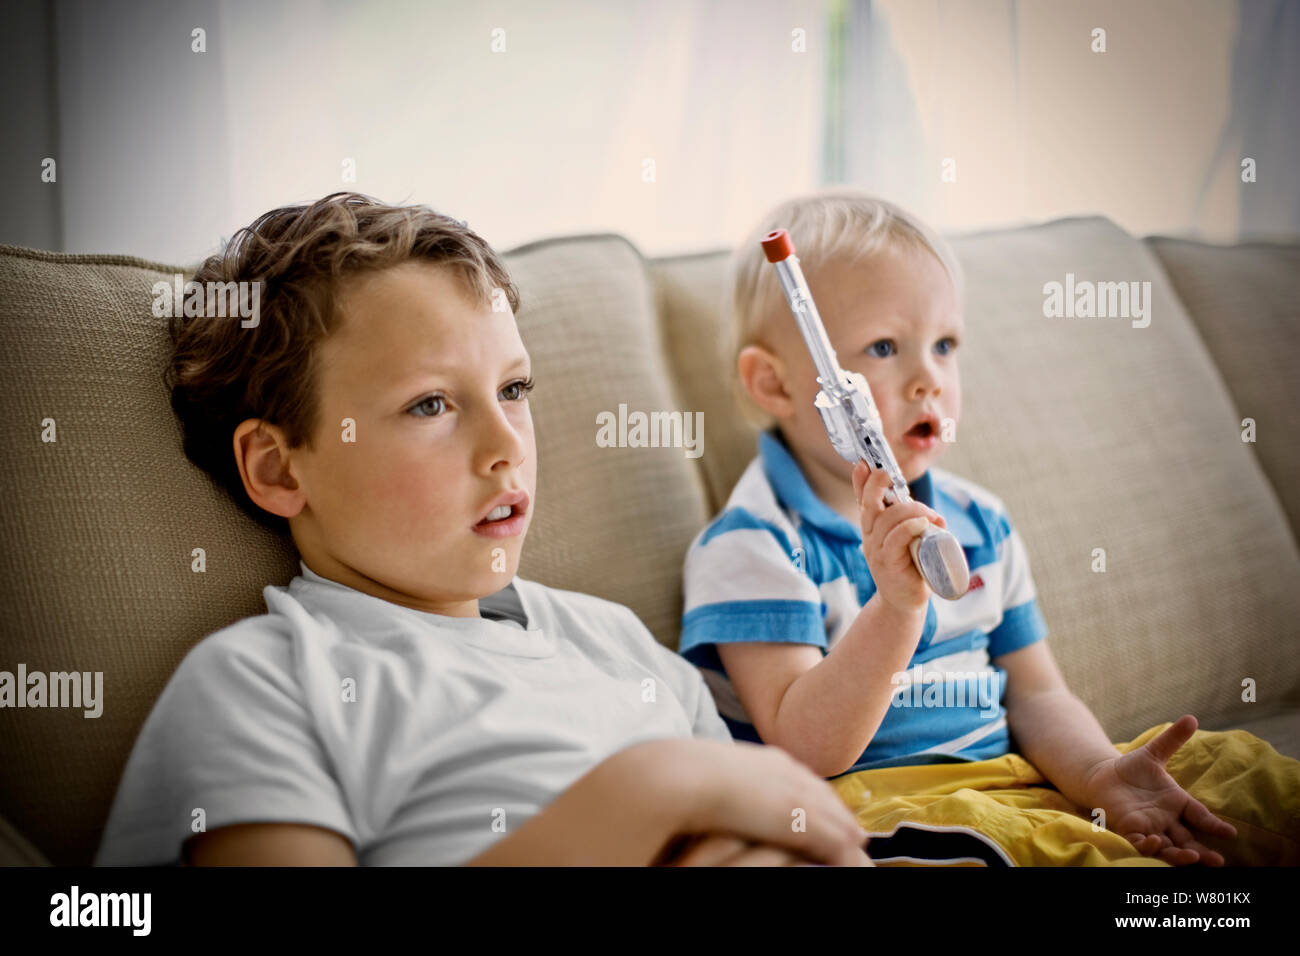 Junge sitzt auf einer Couch neben seinem jüngeren Bruder, hält eine Spielzeugpistole. Stockfoto